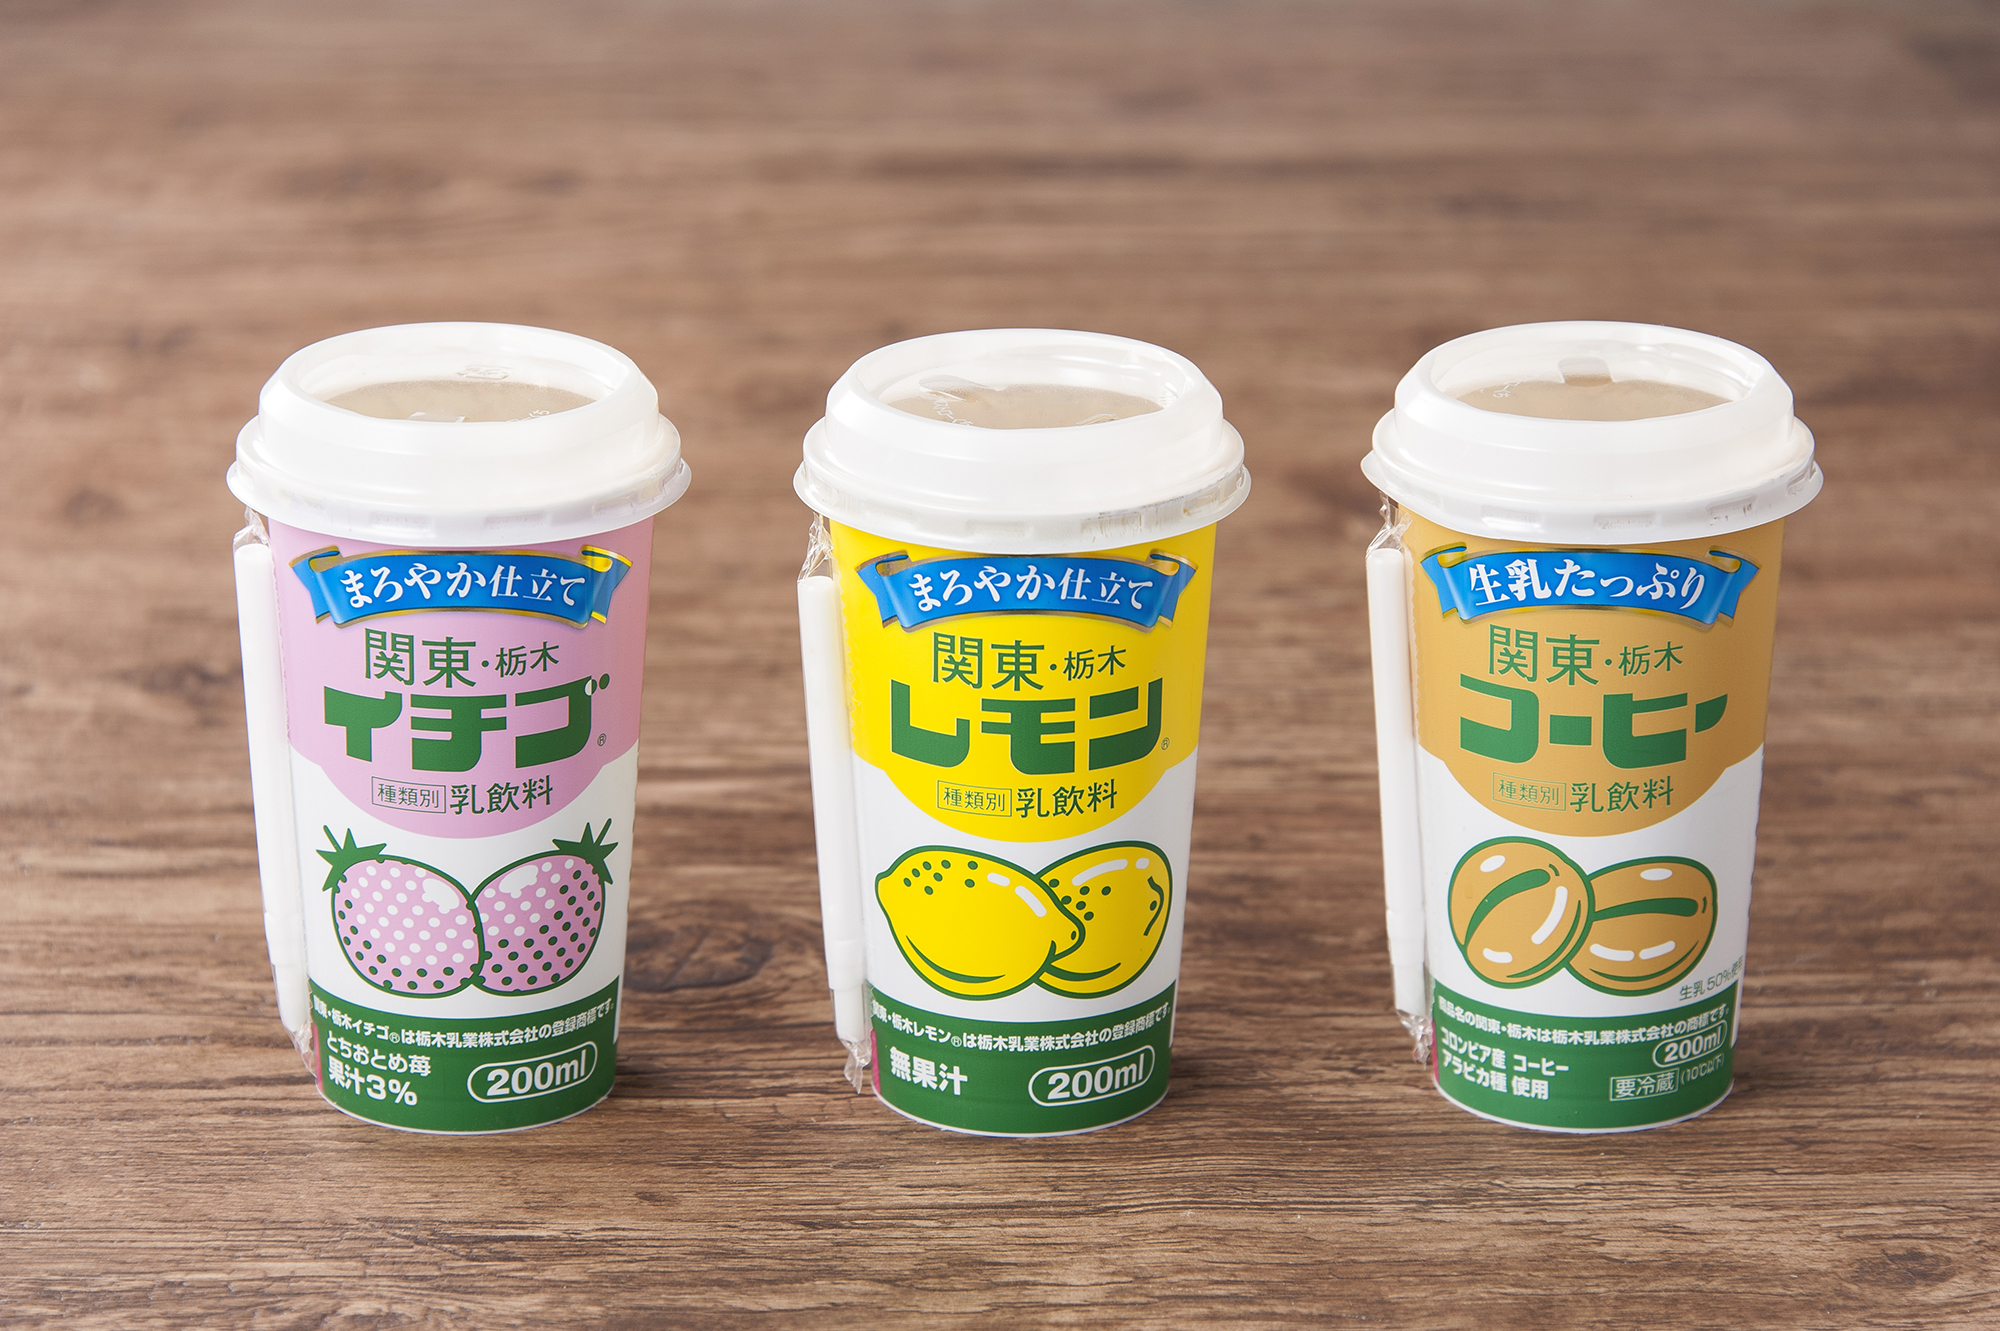 「関東・栃木コーヒー生乳たっぷり200ml」の発売を開始します。